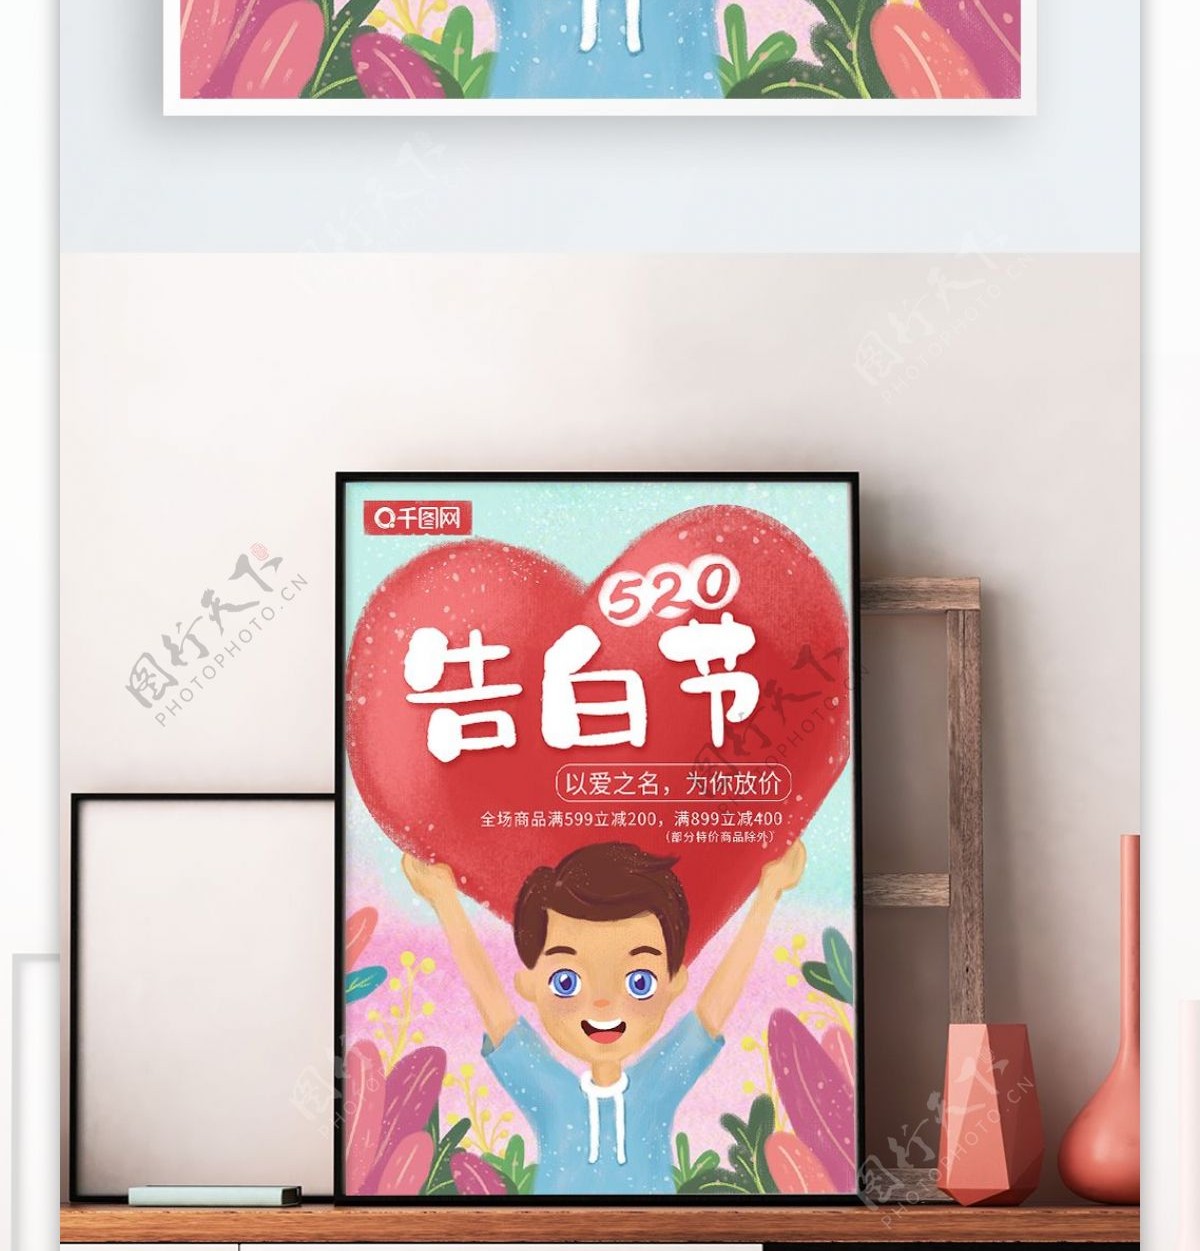 小清新唯美手绘插画风520告白节节日海报